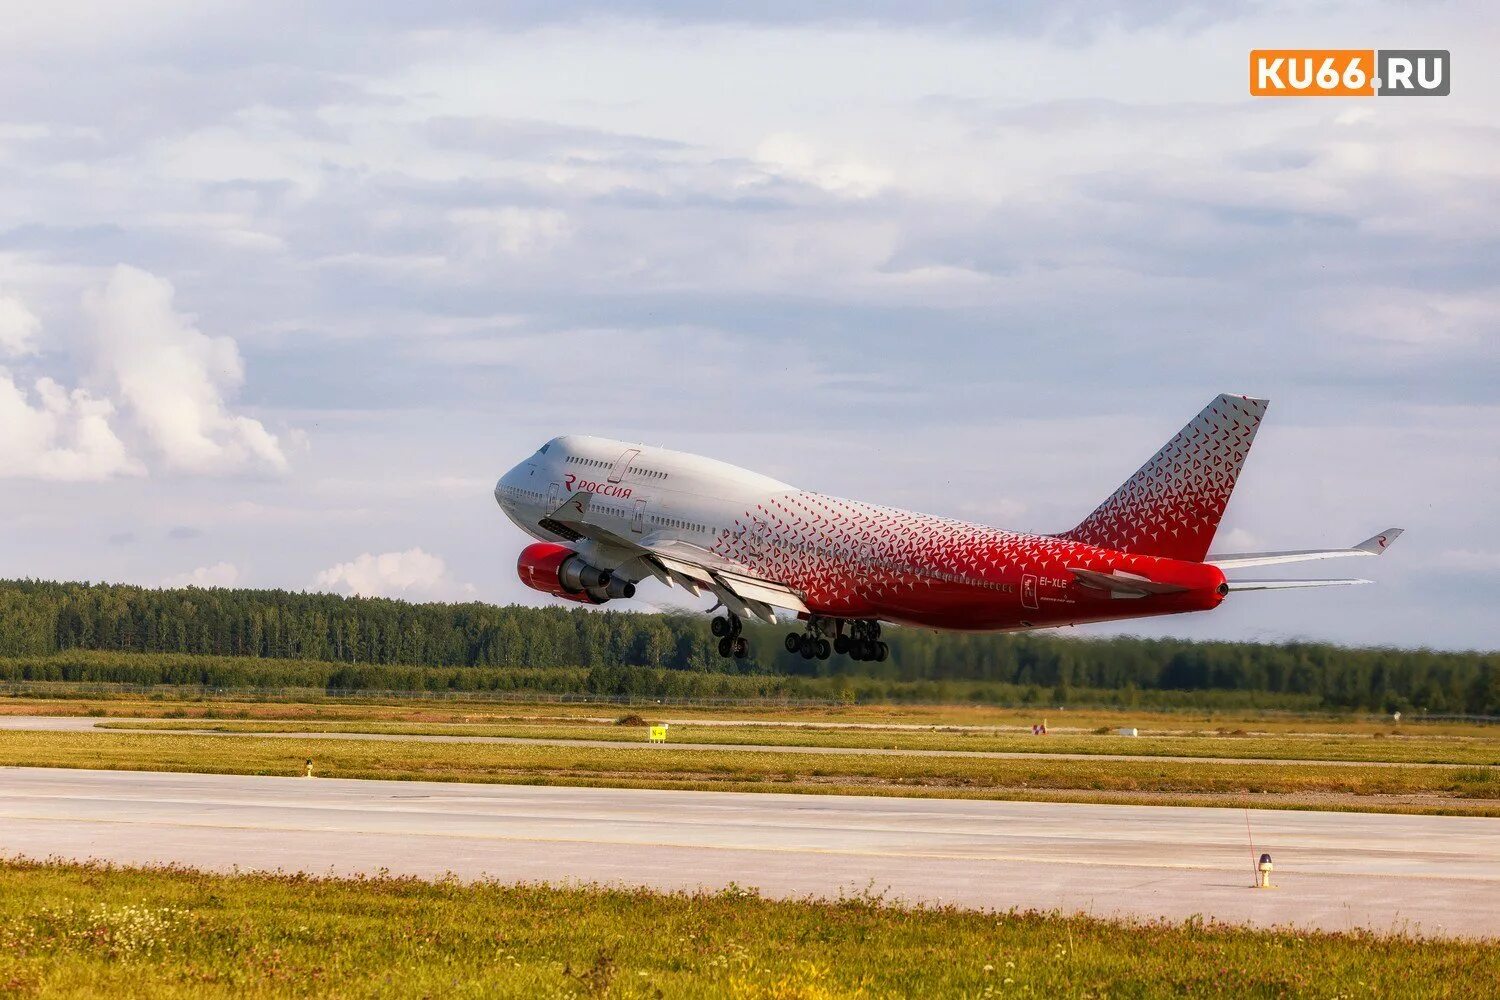 Какие самолеты в мае. Боинг 747 авиакомпания Россия. Самолет Боинг 747 авиакомпания Россия в аэропорту Шереметьево. Авиакомпания Россия в Шереметьево. Красный самолет.